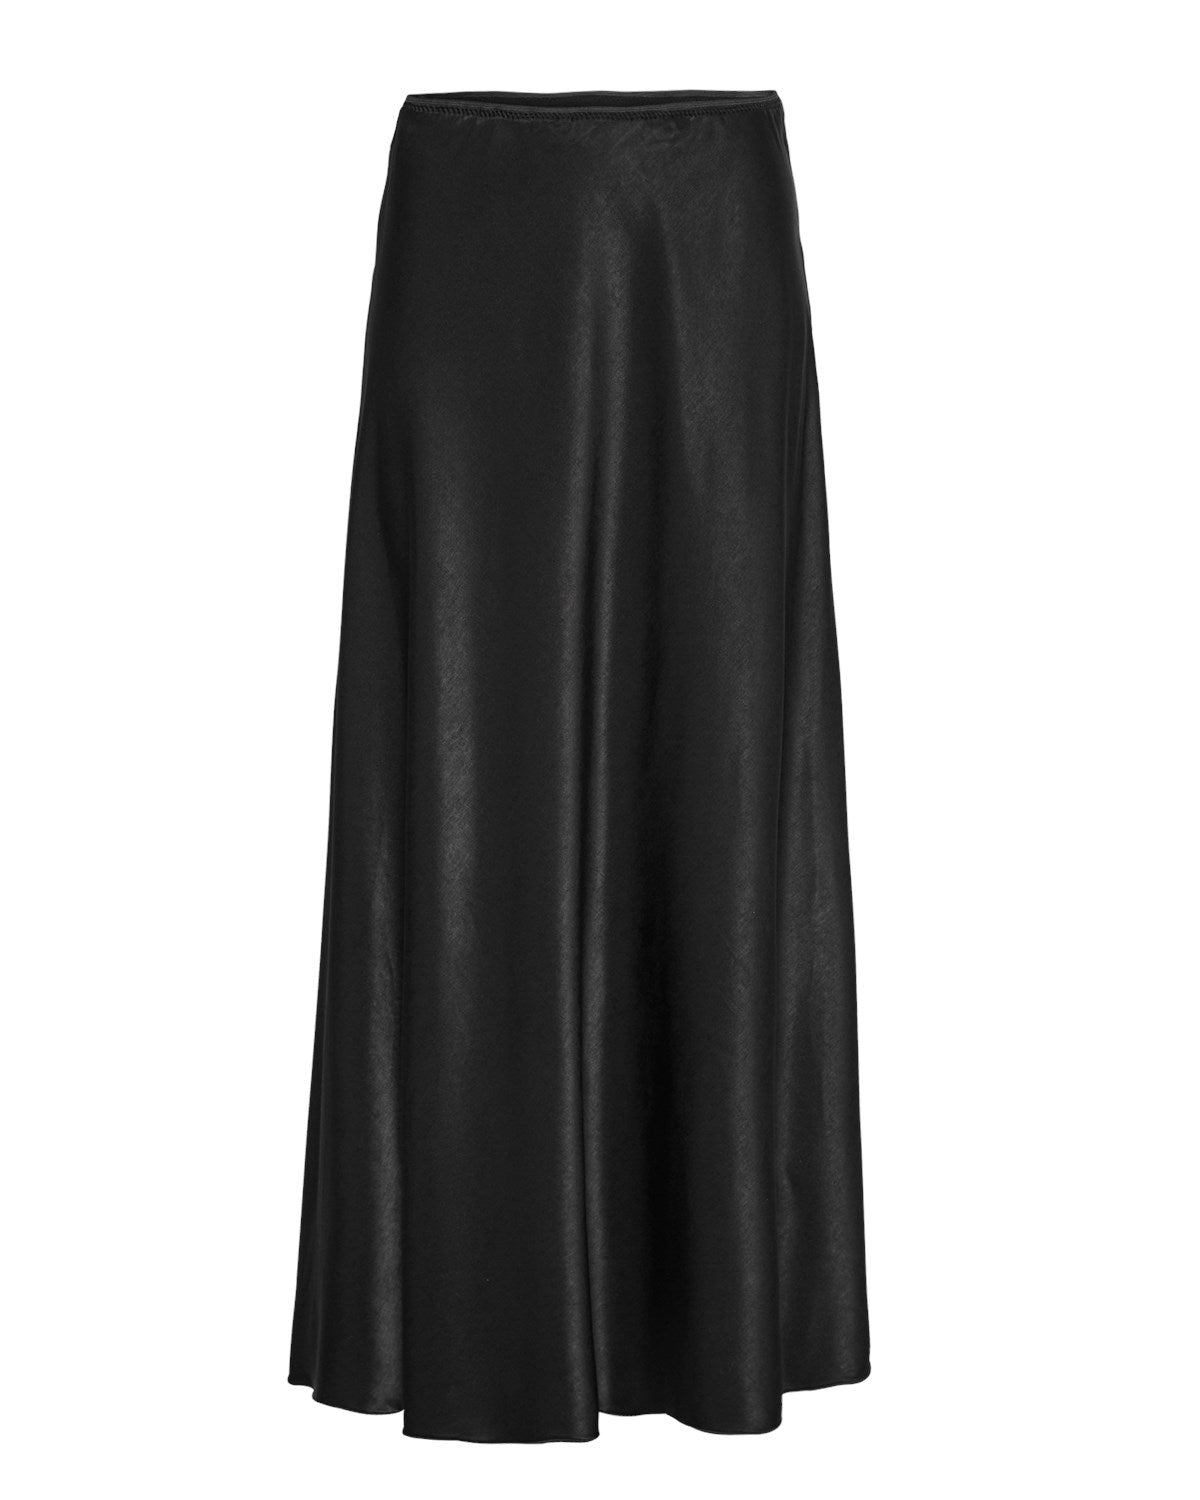 Nicolette Ullas Skirt - Black